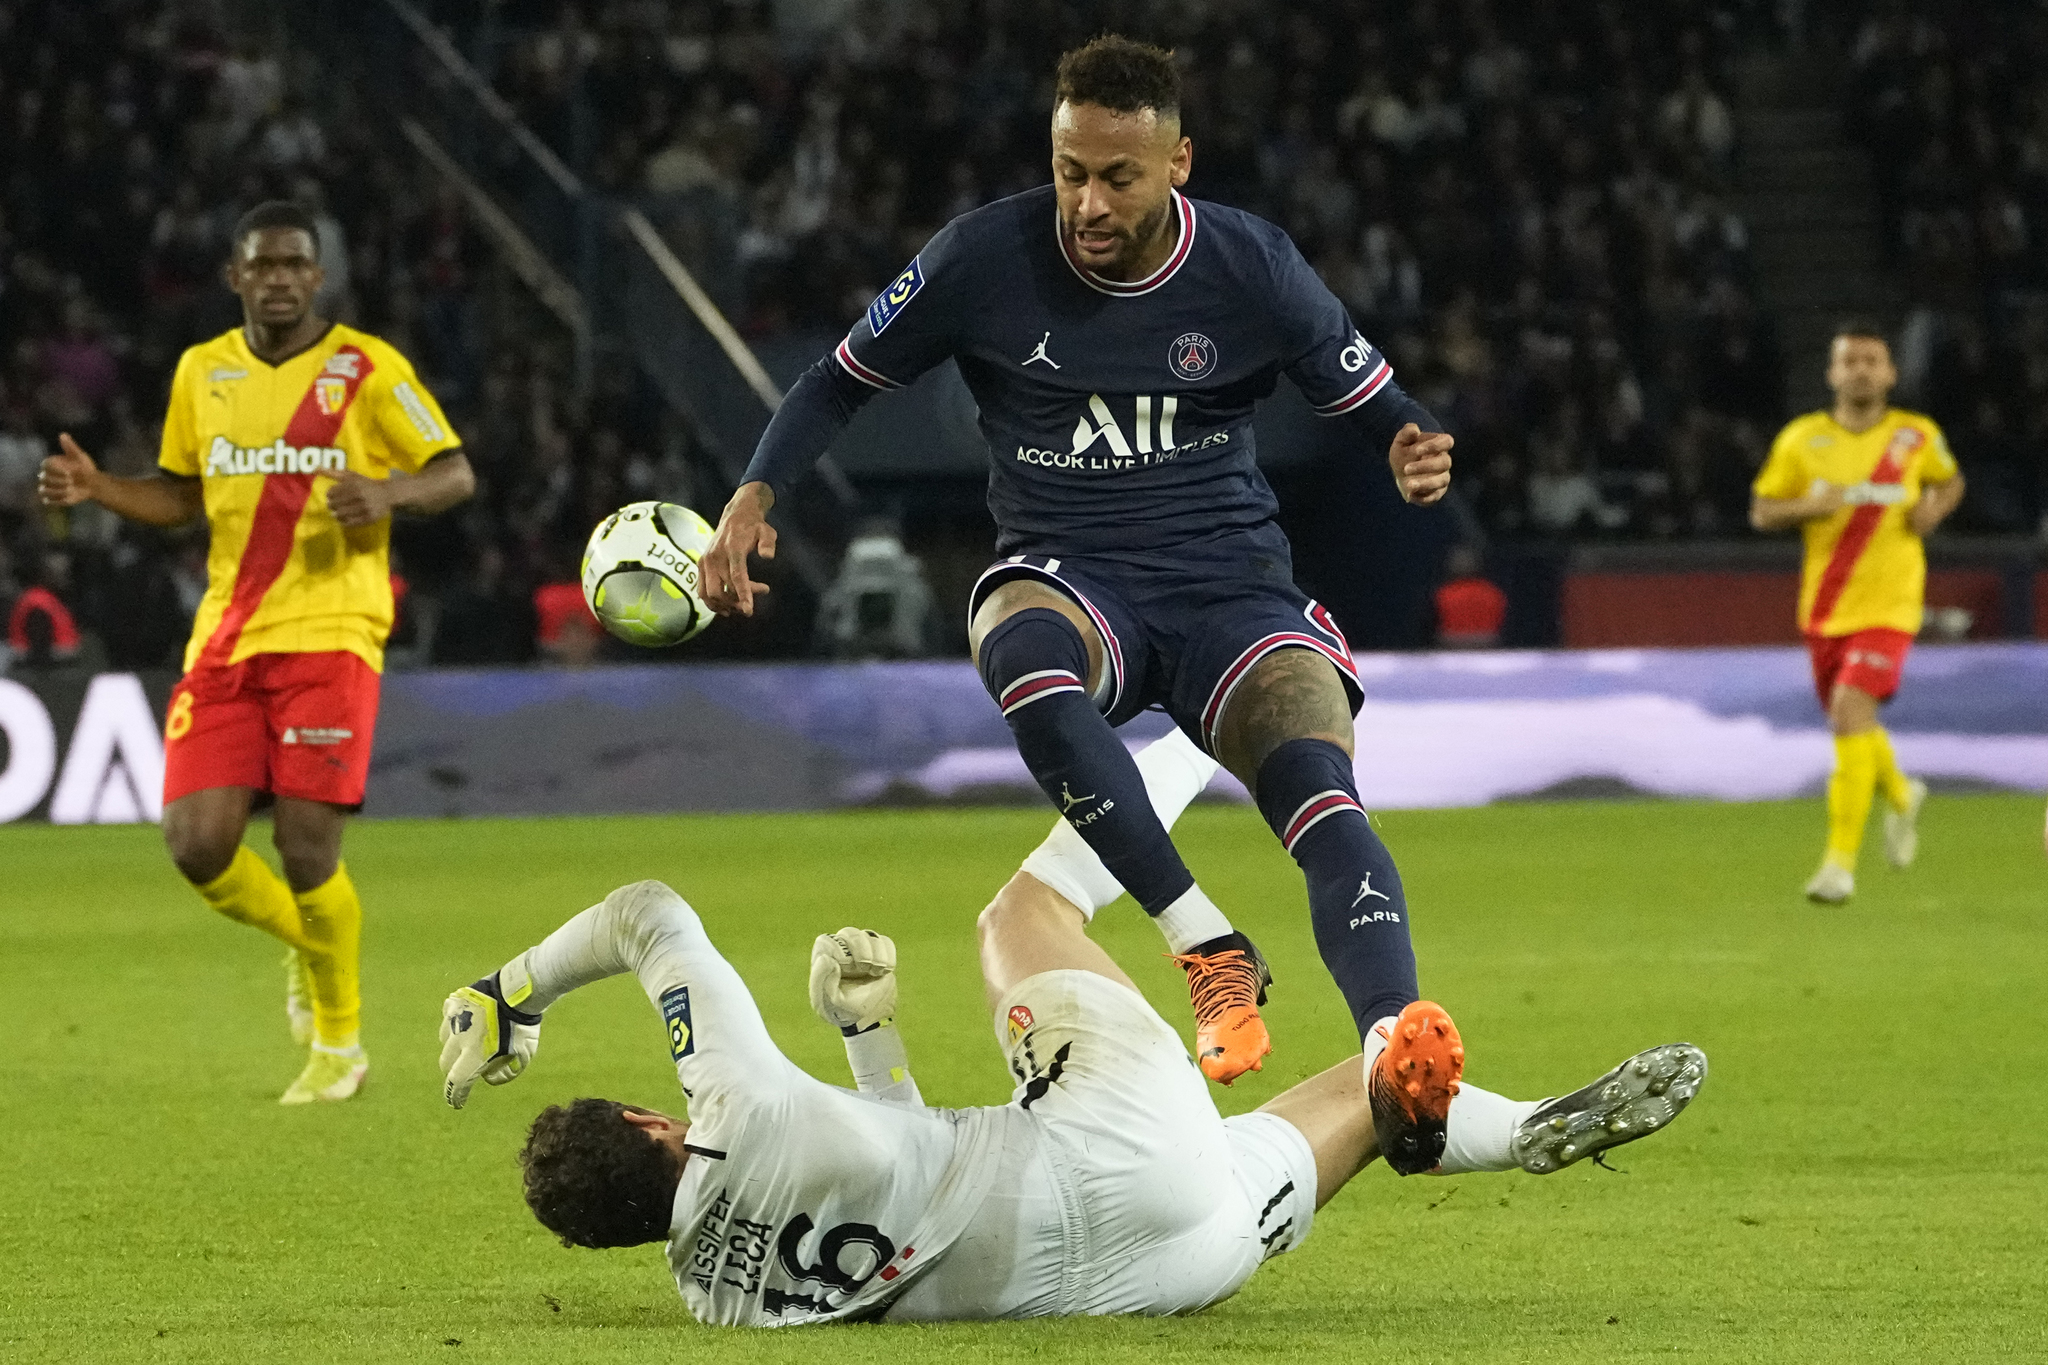 PSG's Neymar, center, and Lens' goalkeeper Jean-Louis Leca challenge for the ball.